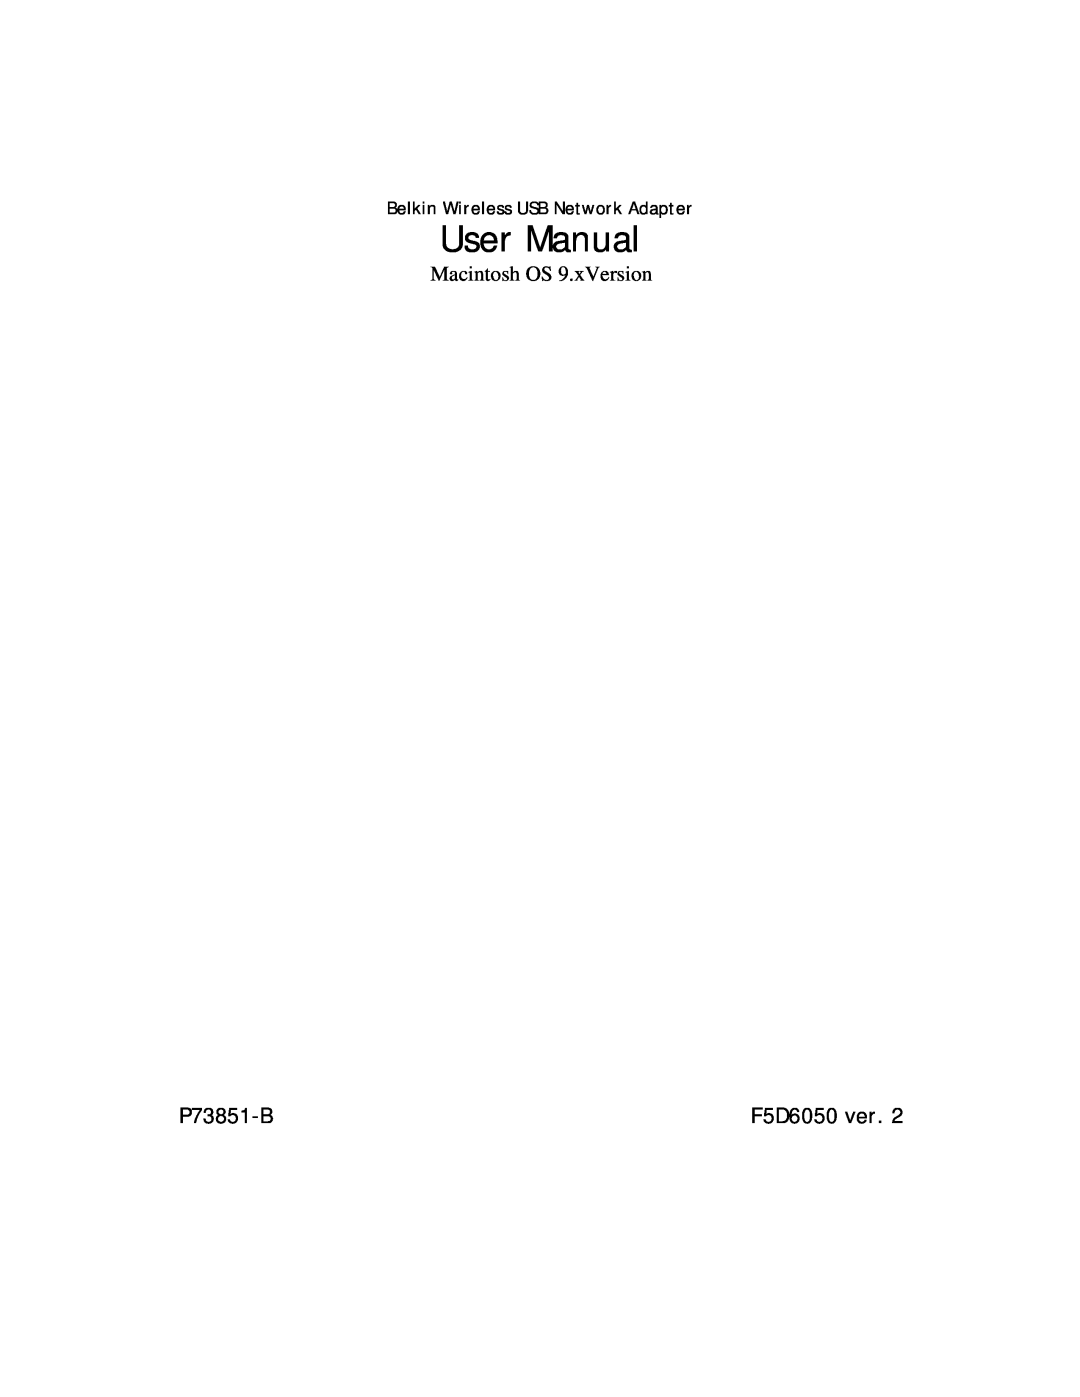 Belkin P73851-B user manual F5D6050 ver, User Manual 